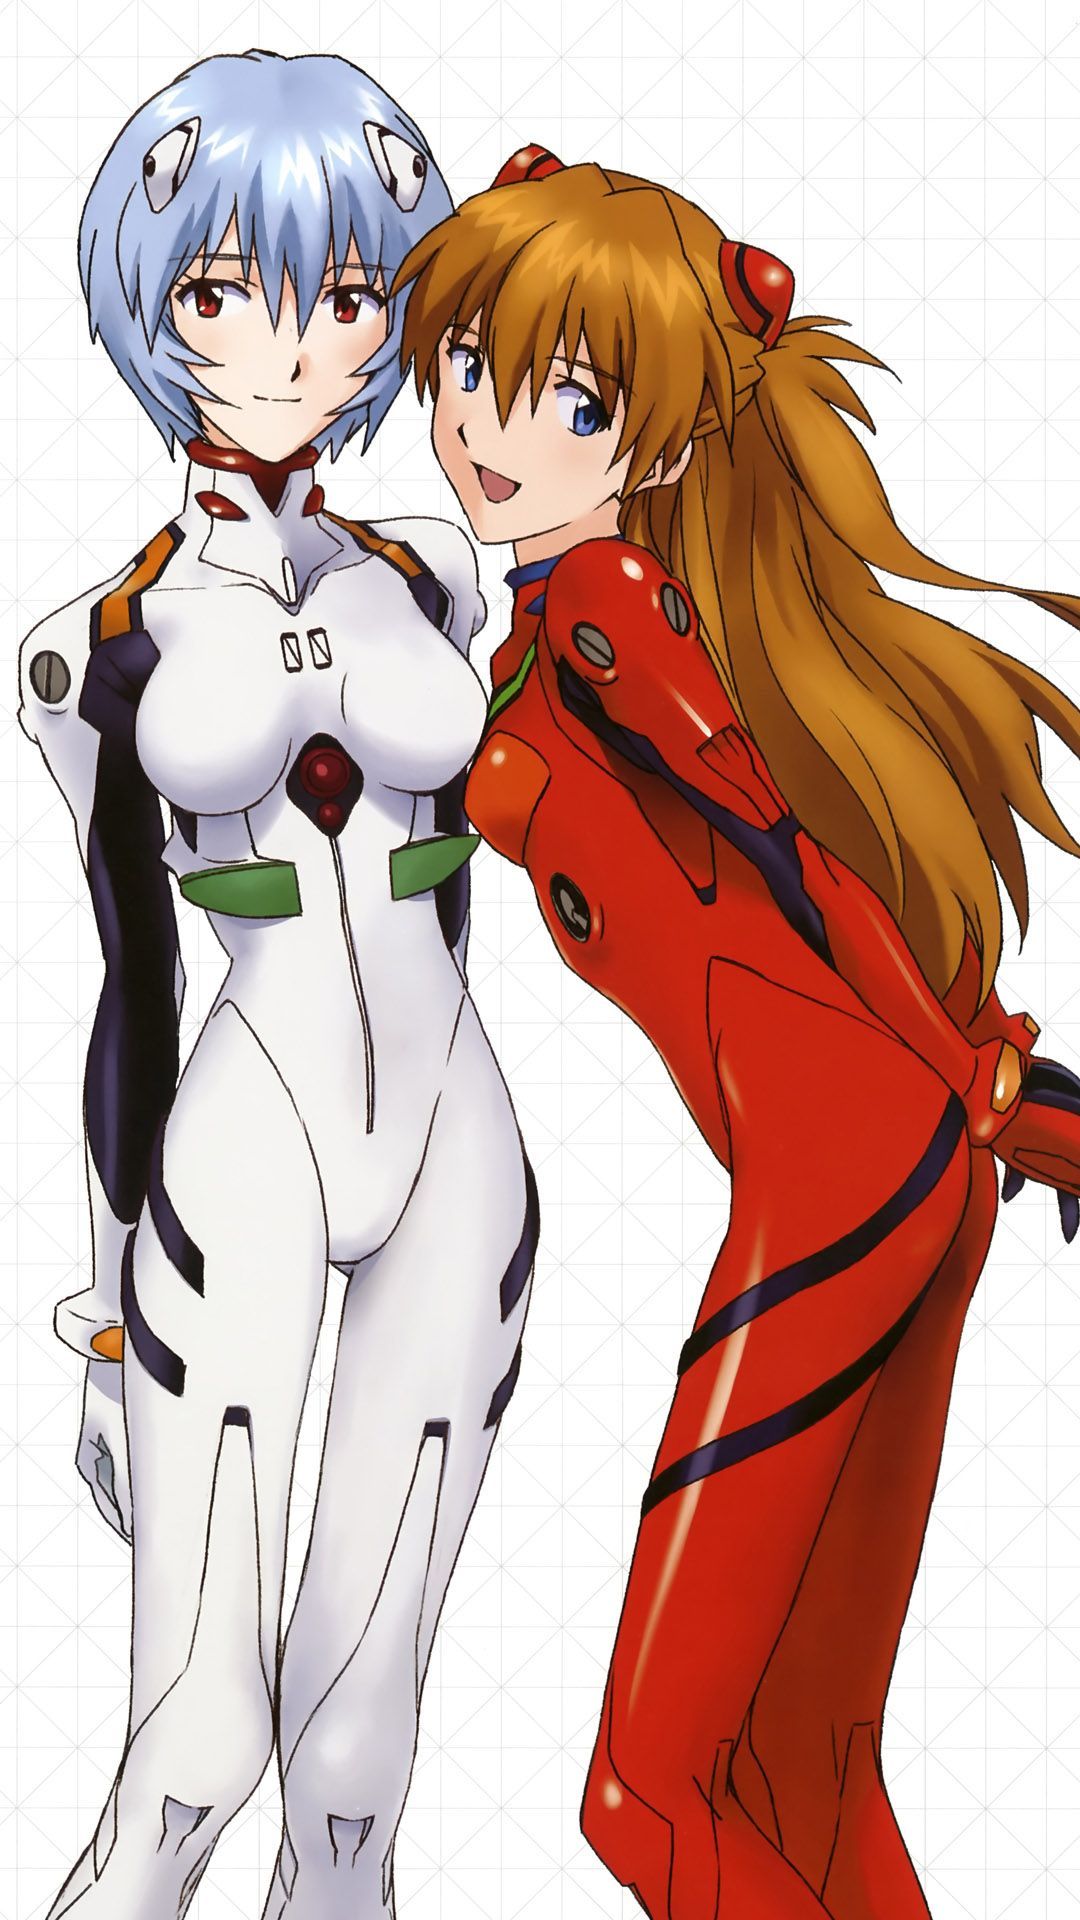 Image Ayanami Rei And Asuka Langley Soryu Anime Mobile Wallpaper 1080x1920 13766 3881567924